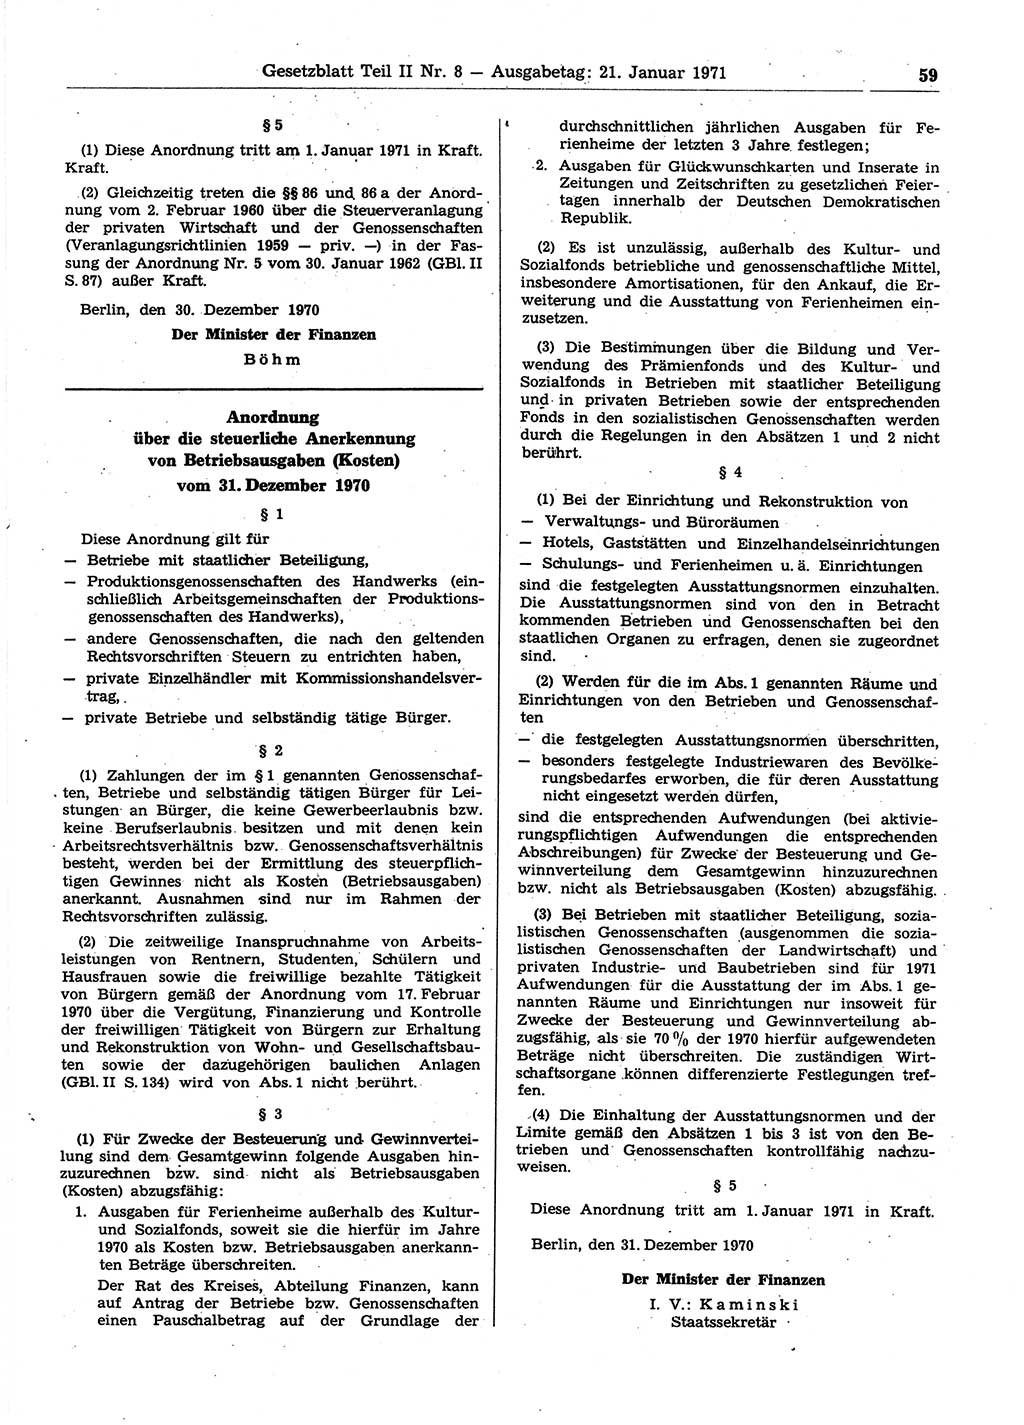 Gesetzblatt (GBl.) der Deutschen Demokratischen Republik (DDR) Teil ⅠⅠ 1971, Seite 59 (GBl. DDR ⅠⅠ 1971, S. 59)